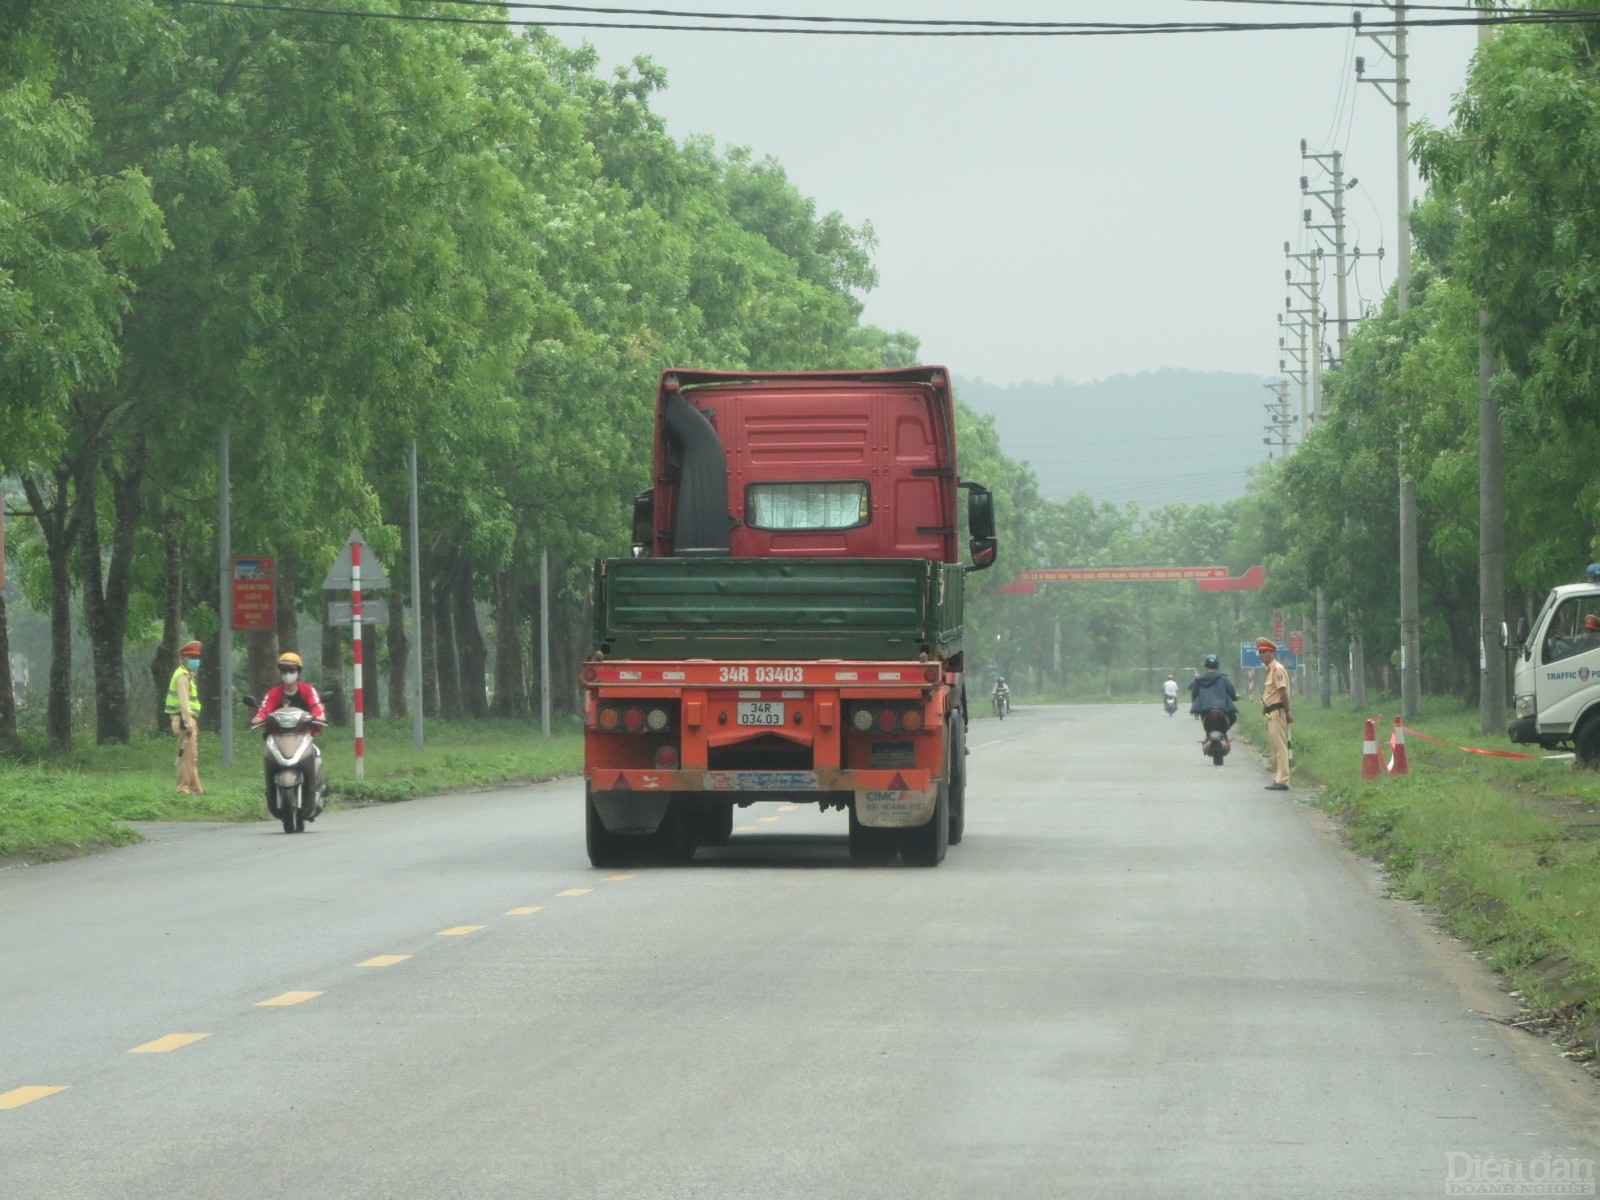 Hàng loạt xe tải trọng lớn vô tư qua mặt tổ tuần tra kiểm soát giao thông của CSGT-TT Công an huyện Đức Thọ, Hà Tĩnh để ngược xuôi trên sang địa phận xã Trung Phúc Cường, huyện Nam Đàn, Nghệ An